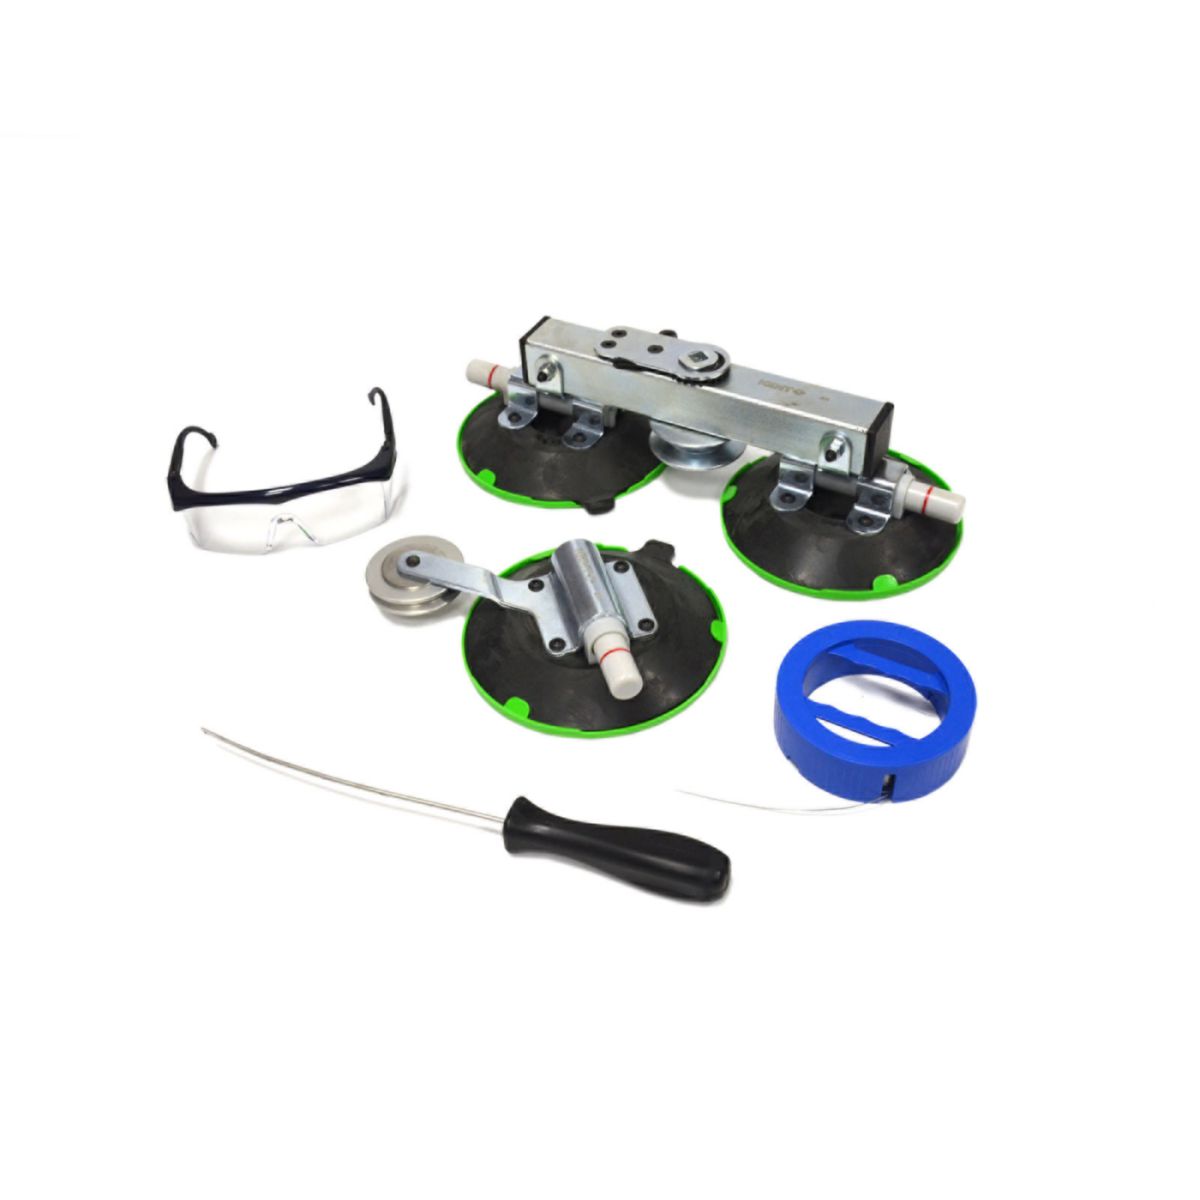 Kits d'outils de démontage de pare-brise de voiture Qualité